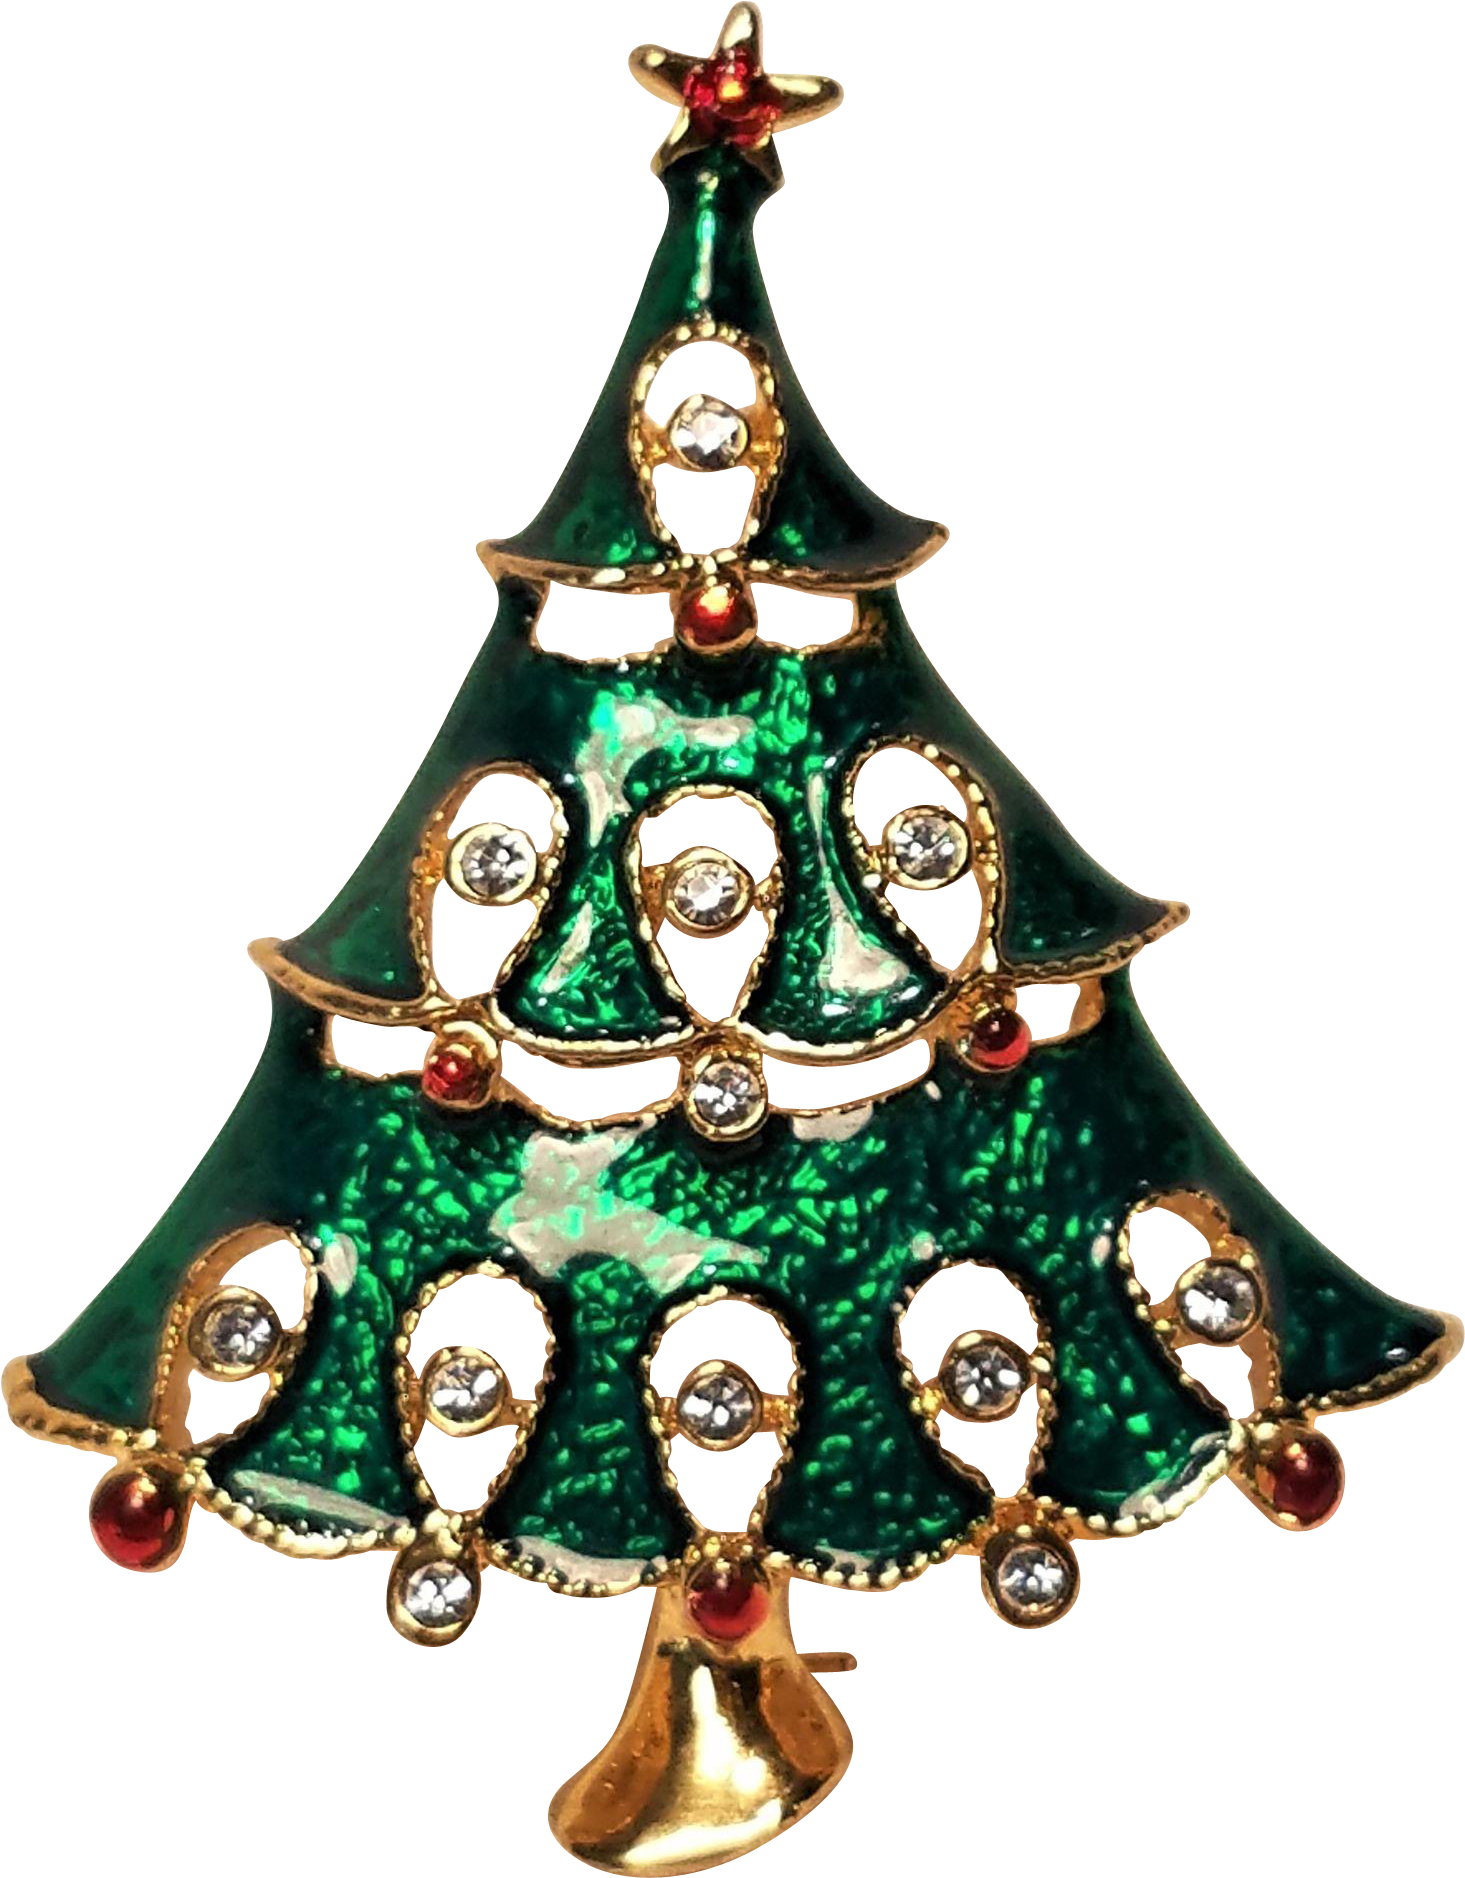 Vintage Christmas Green Enamel Tree Pin With Rhinestones - Christmas Ornament (1877x1877)